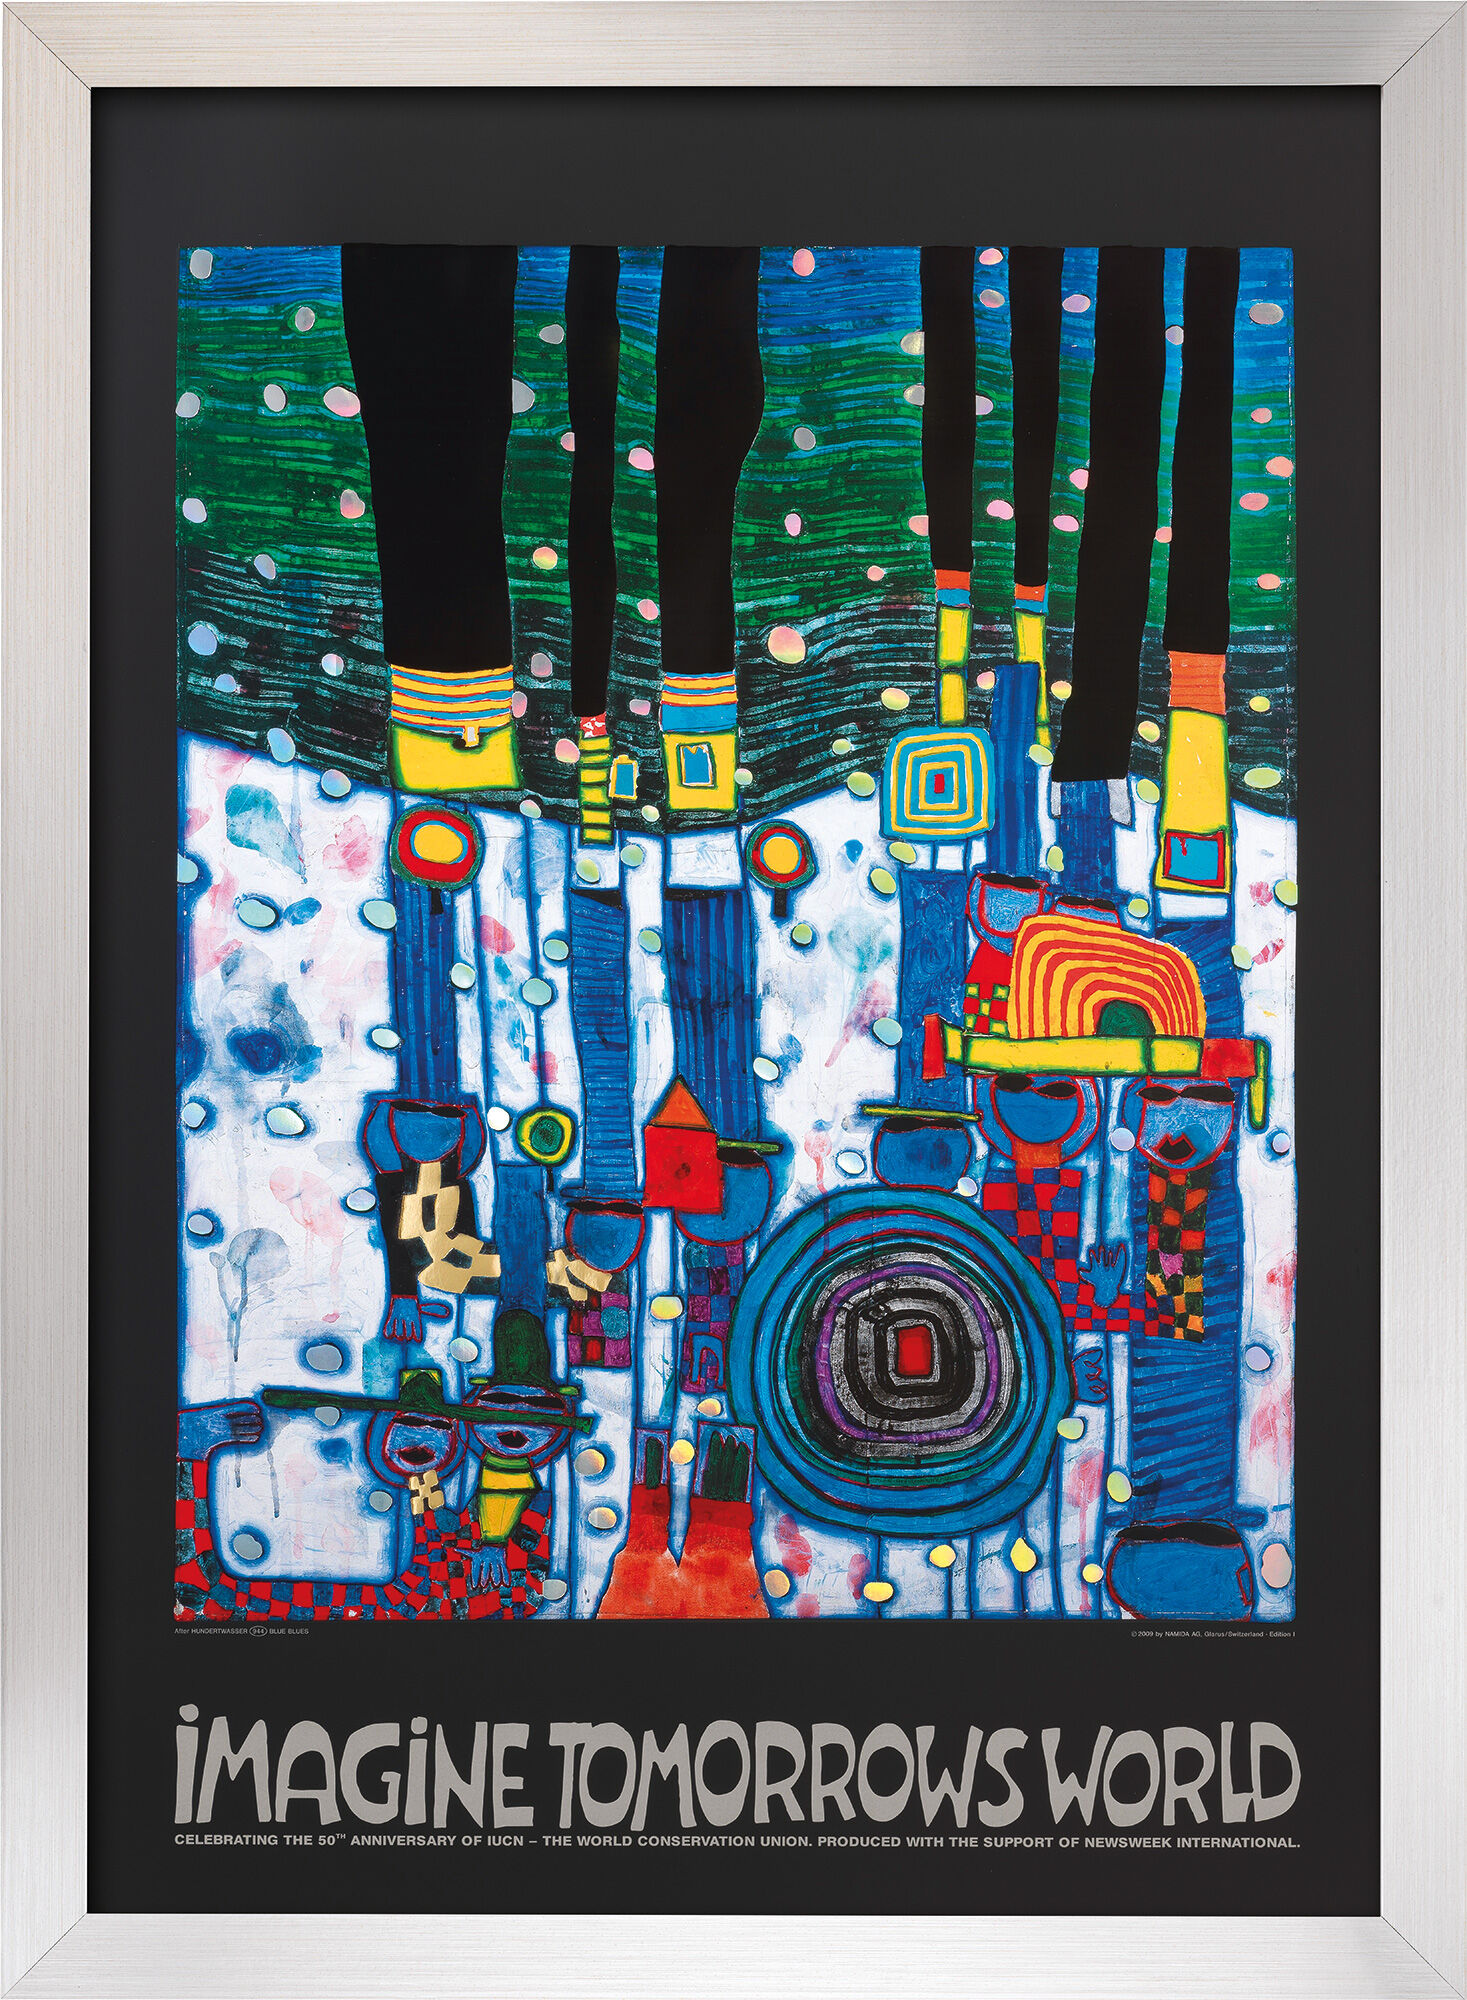 Billede "Imagine tomorrows world" (blå version), indrammet von Friedensreich Hundertwasser